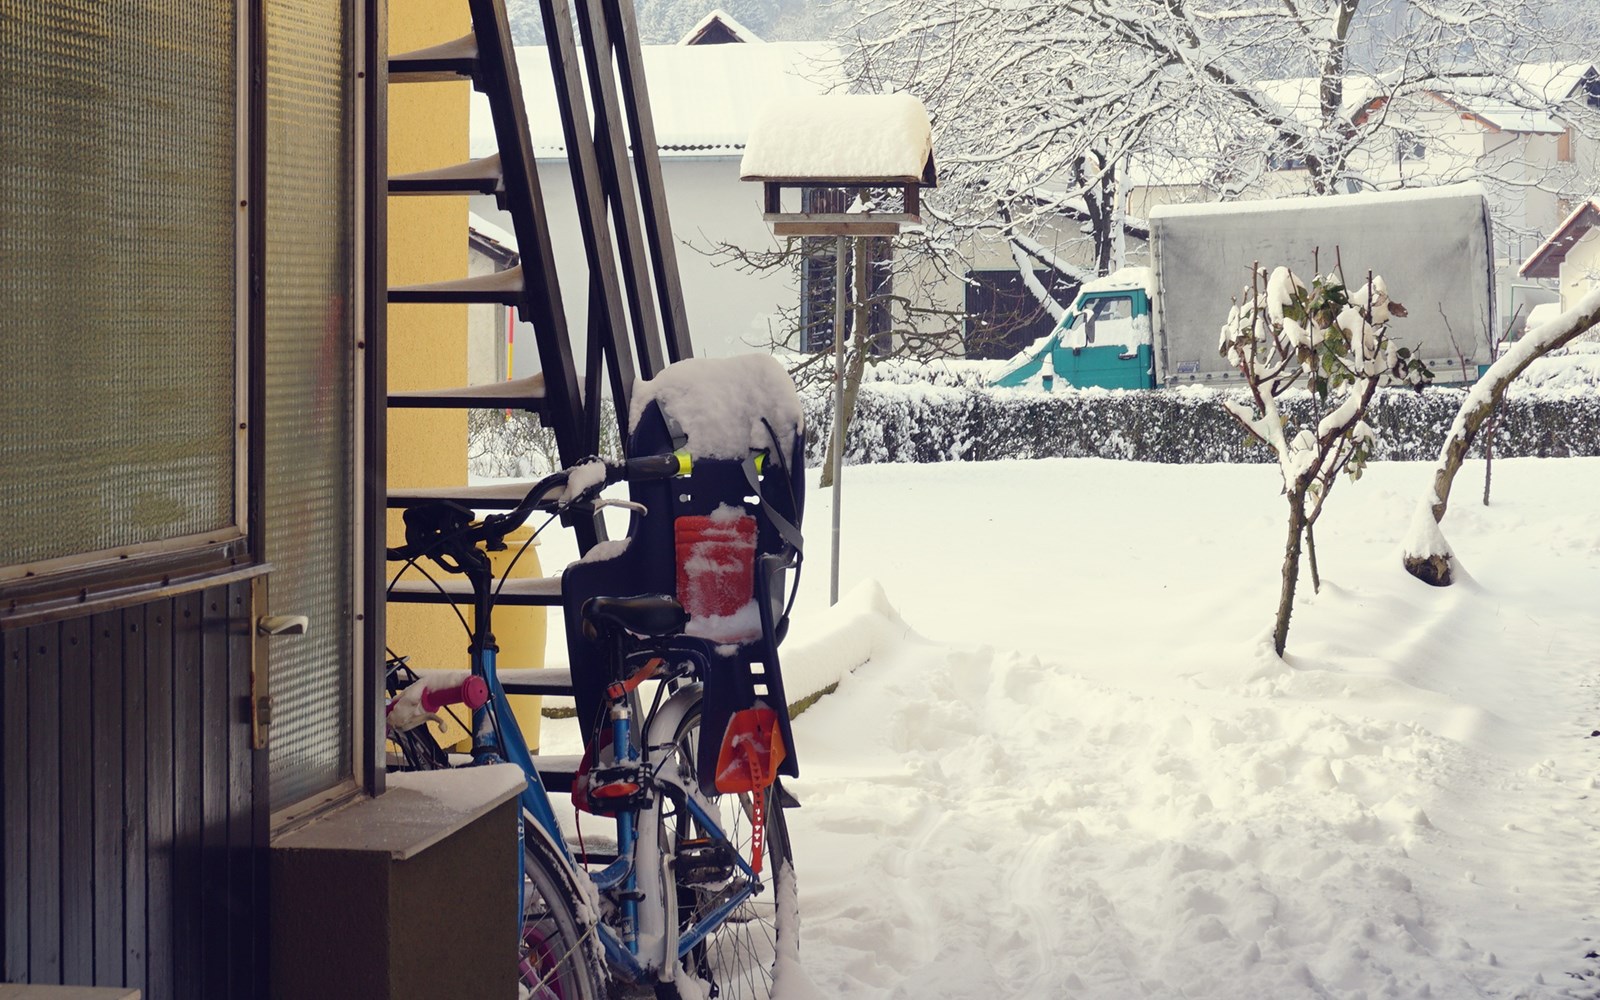 Let it snow: Entspannter Winterdienst mit Akku-Laubbläser